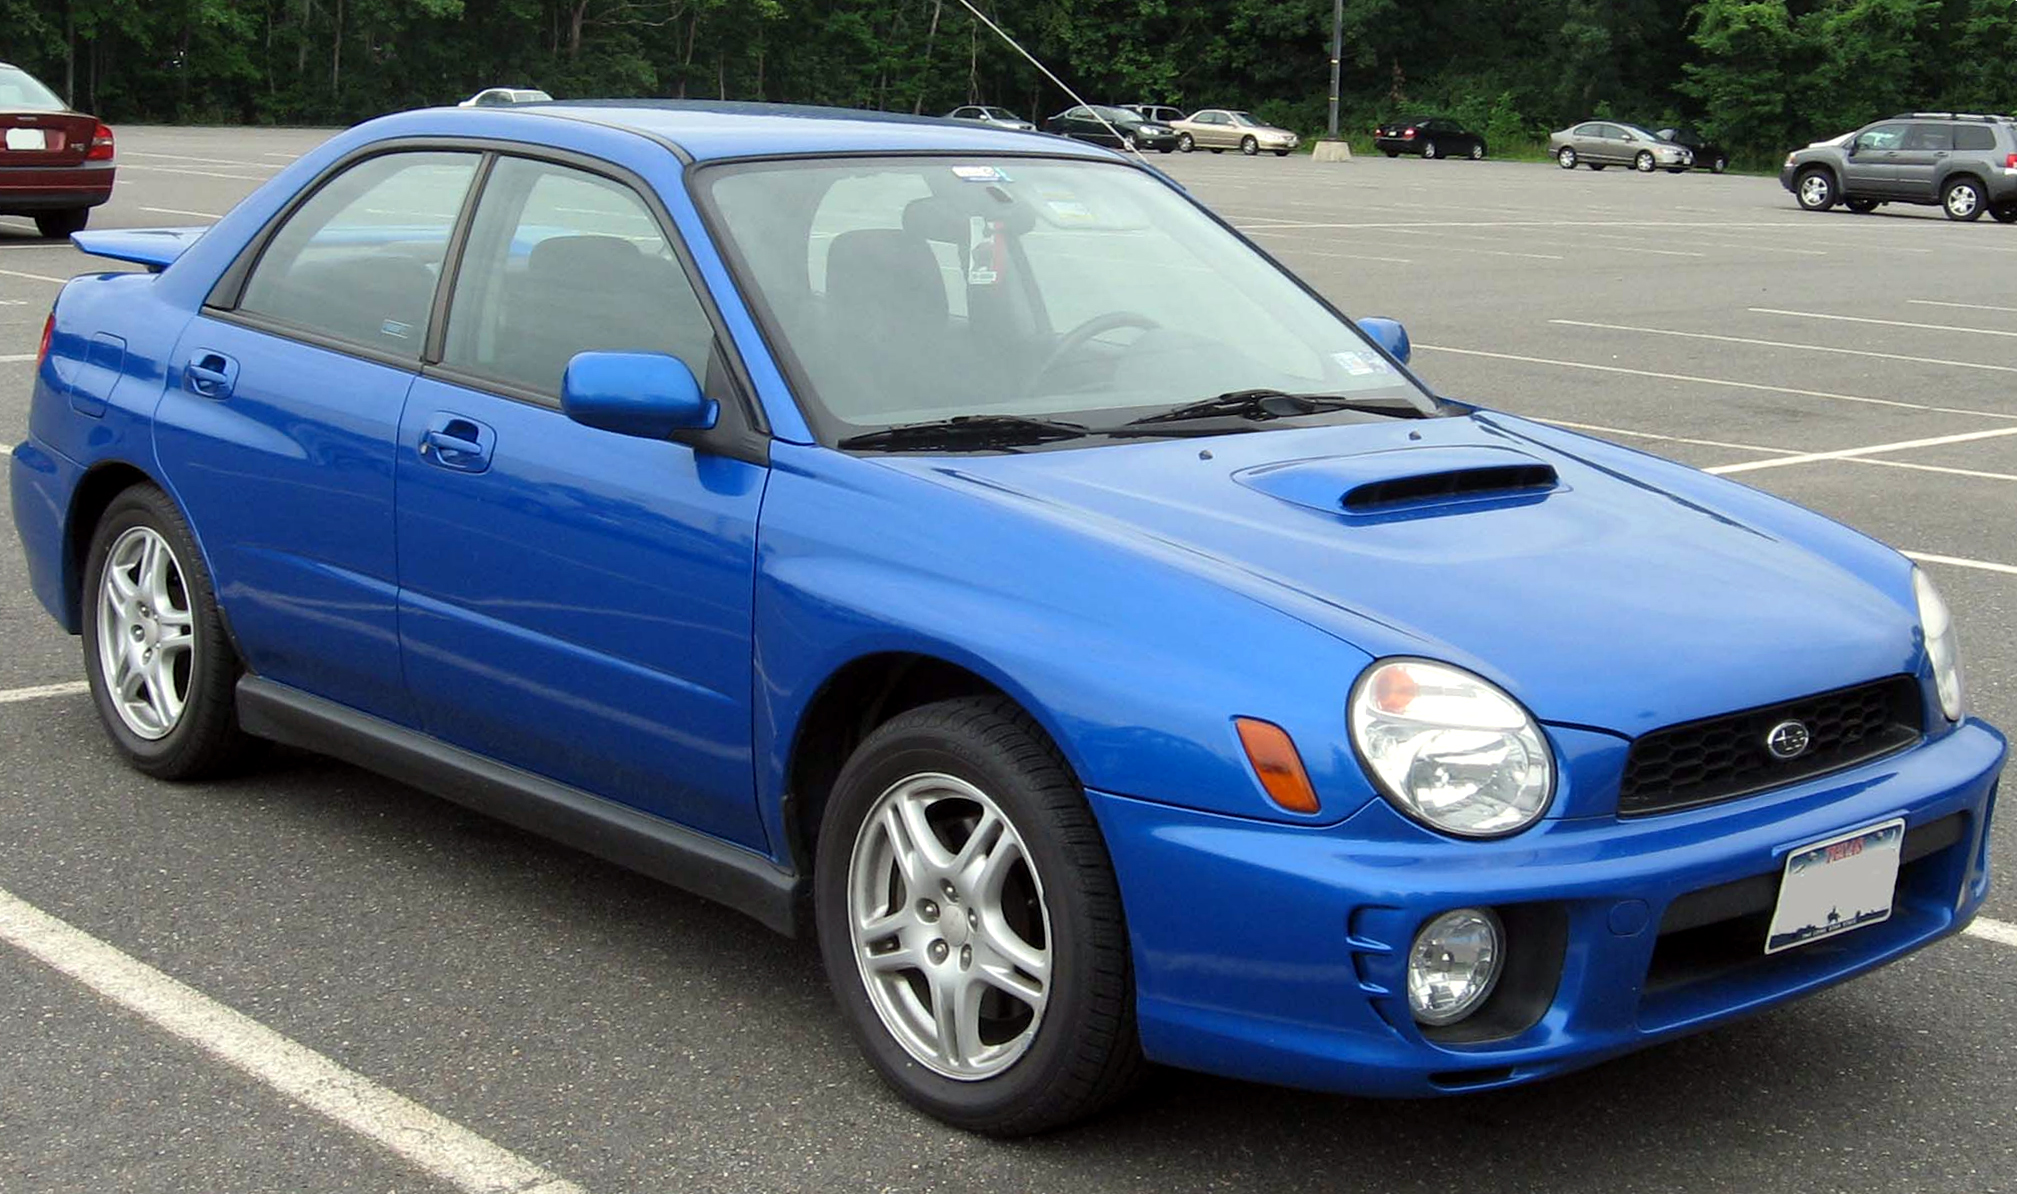 File:2002-03 Subaru WRX sedan.jpg - Wikimedia Commons